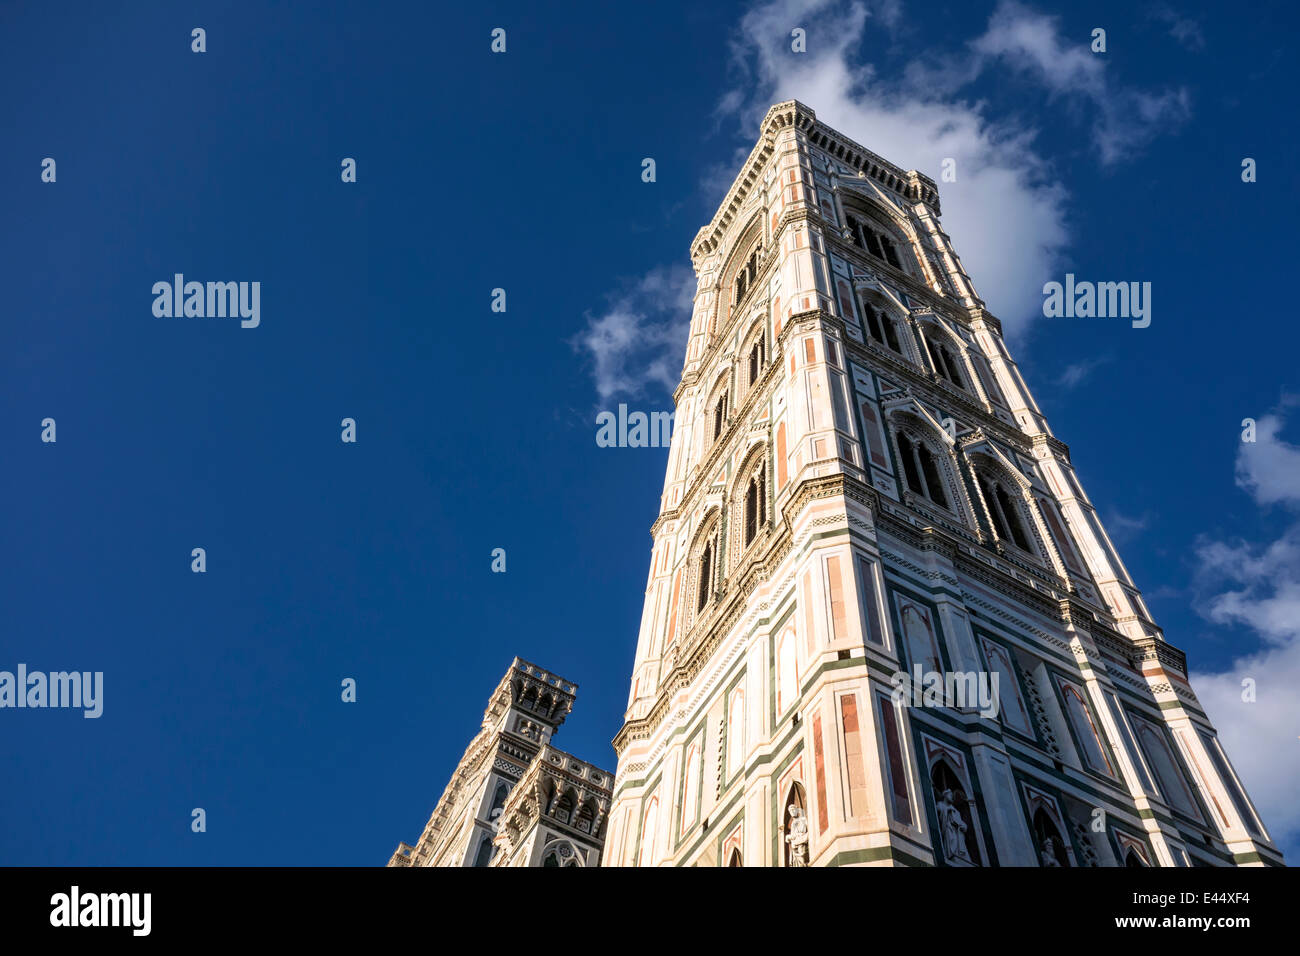 La catedral de Florencia: el Duomo de Santa Maria del Fiore,Italia Foto de stock